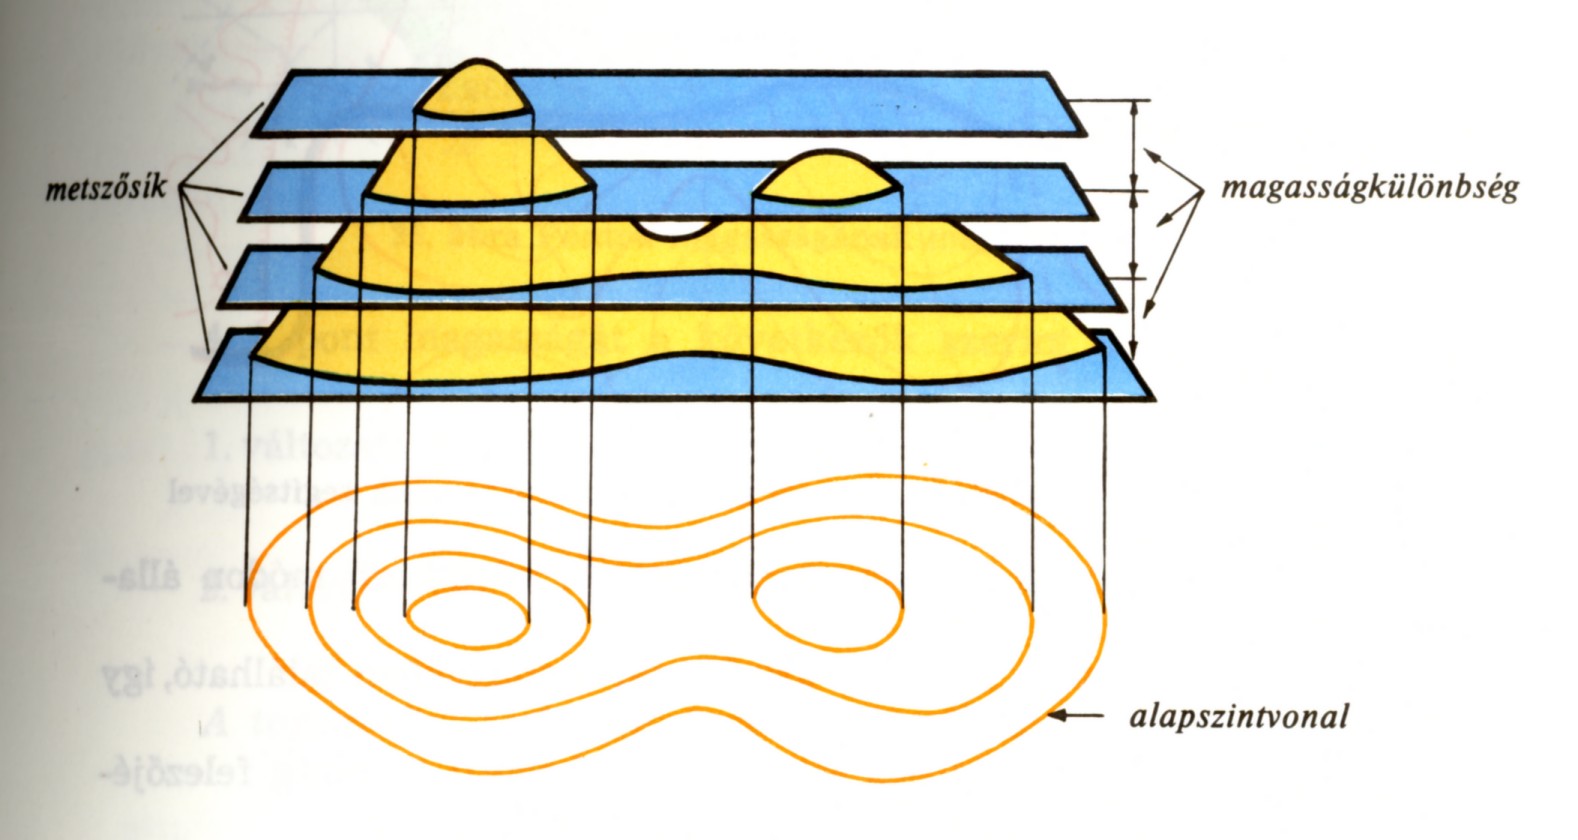 Szintvonalak származtatása A szintvonal a geoiddal párhuzamos, egymástól azonos távolságra lévő szintfelületek